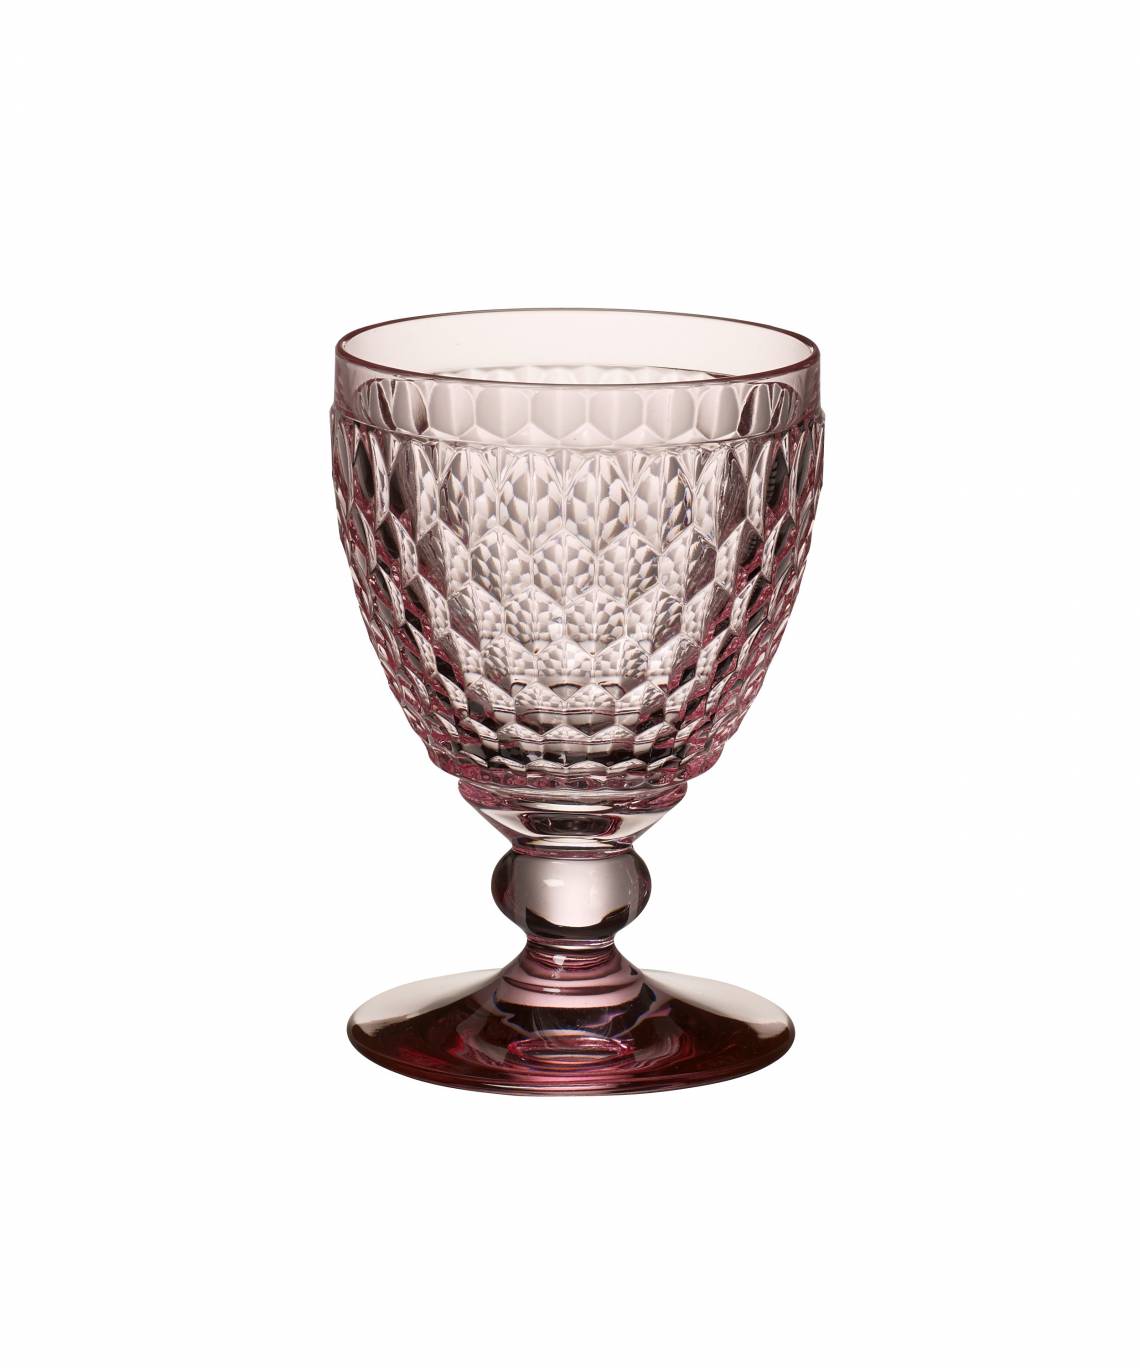 Trinkglas aus hochwertigem Kristallglas in Rose von Villeroy & Boch